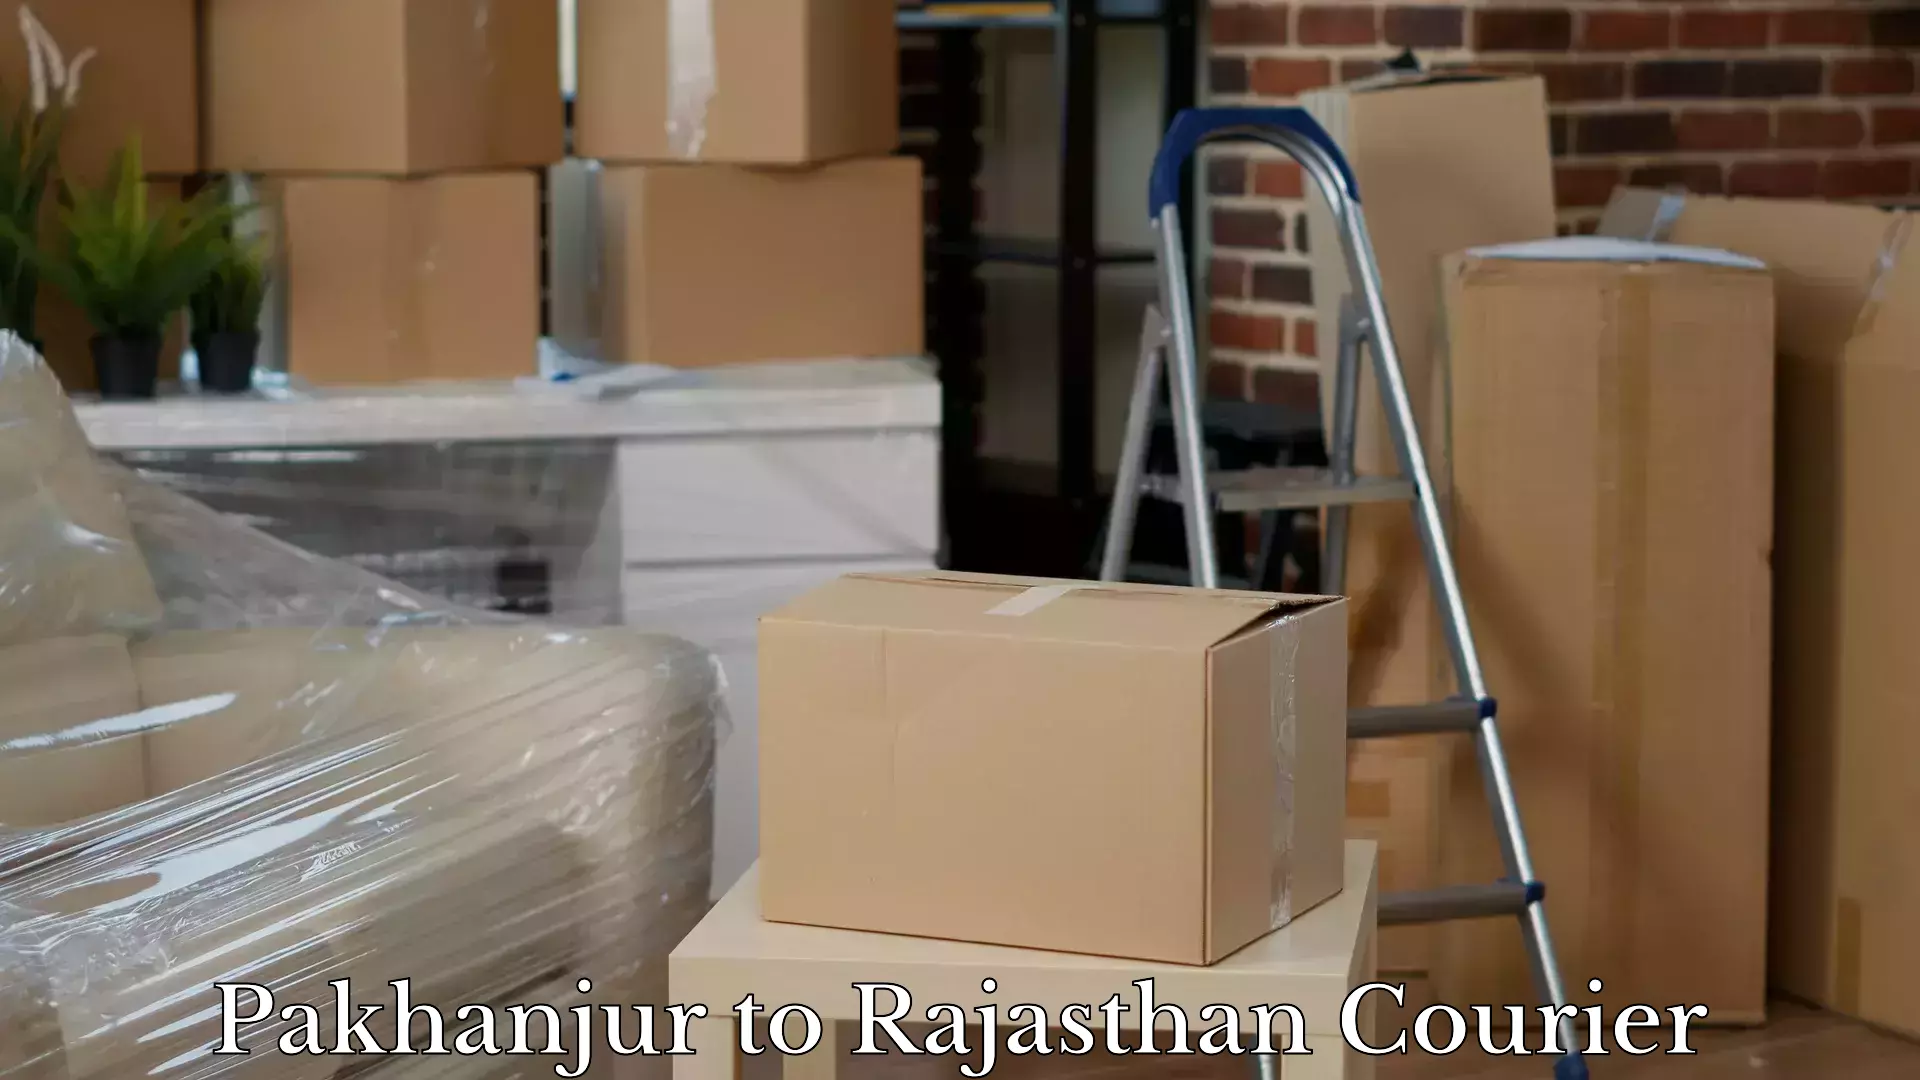 Baggage transport management Pakhanjur to Rajasthan